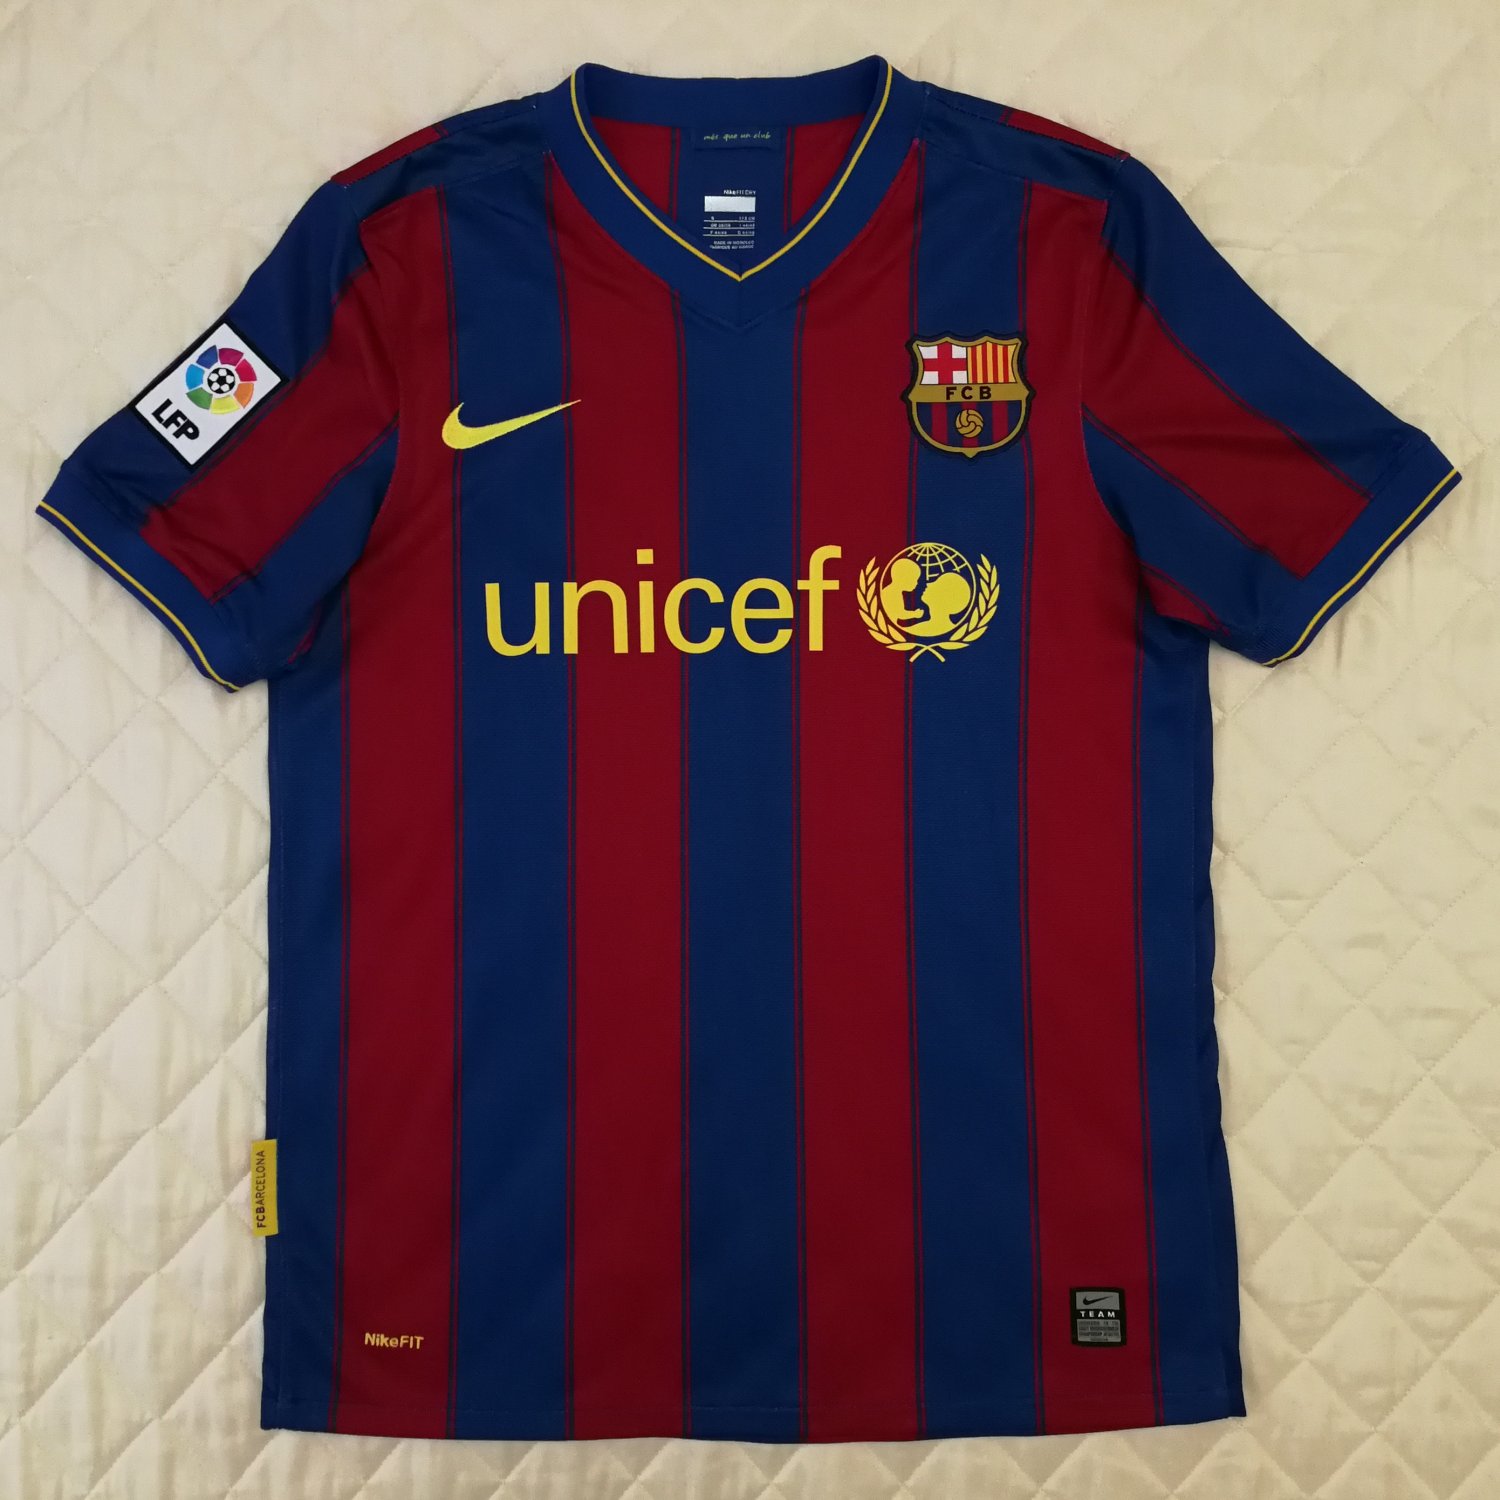 Barcelona Home maglia di calcio 2009 - 2010. Sponsored by Unicef